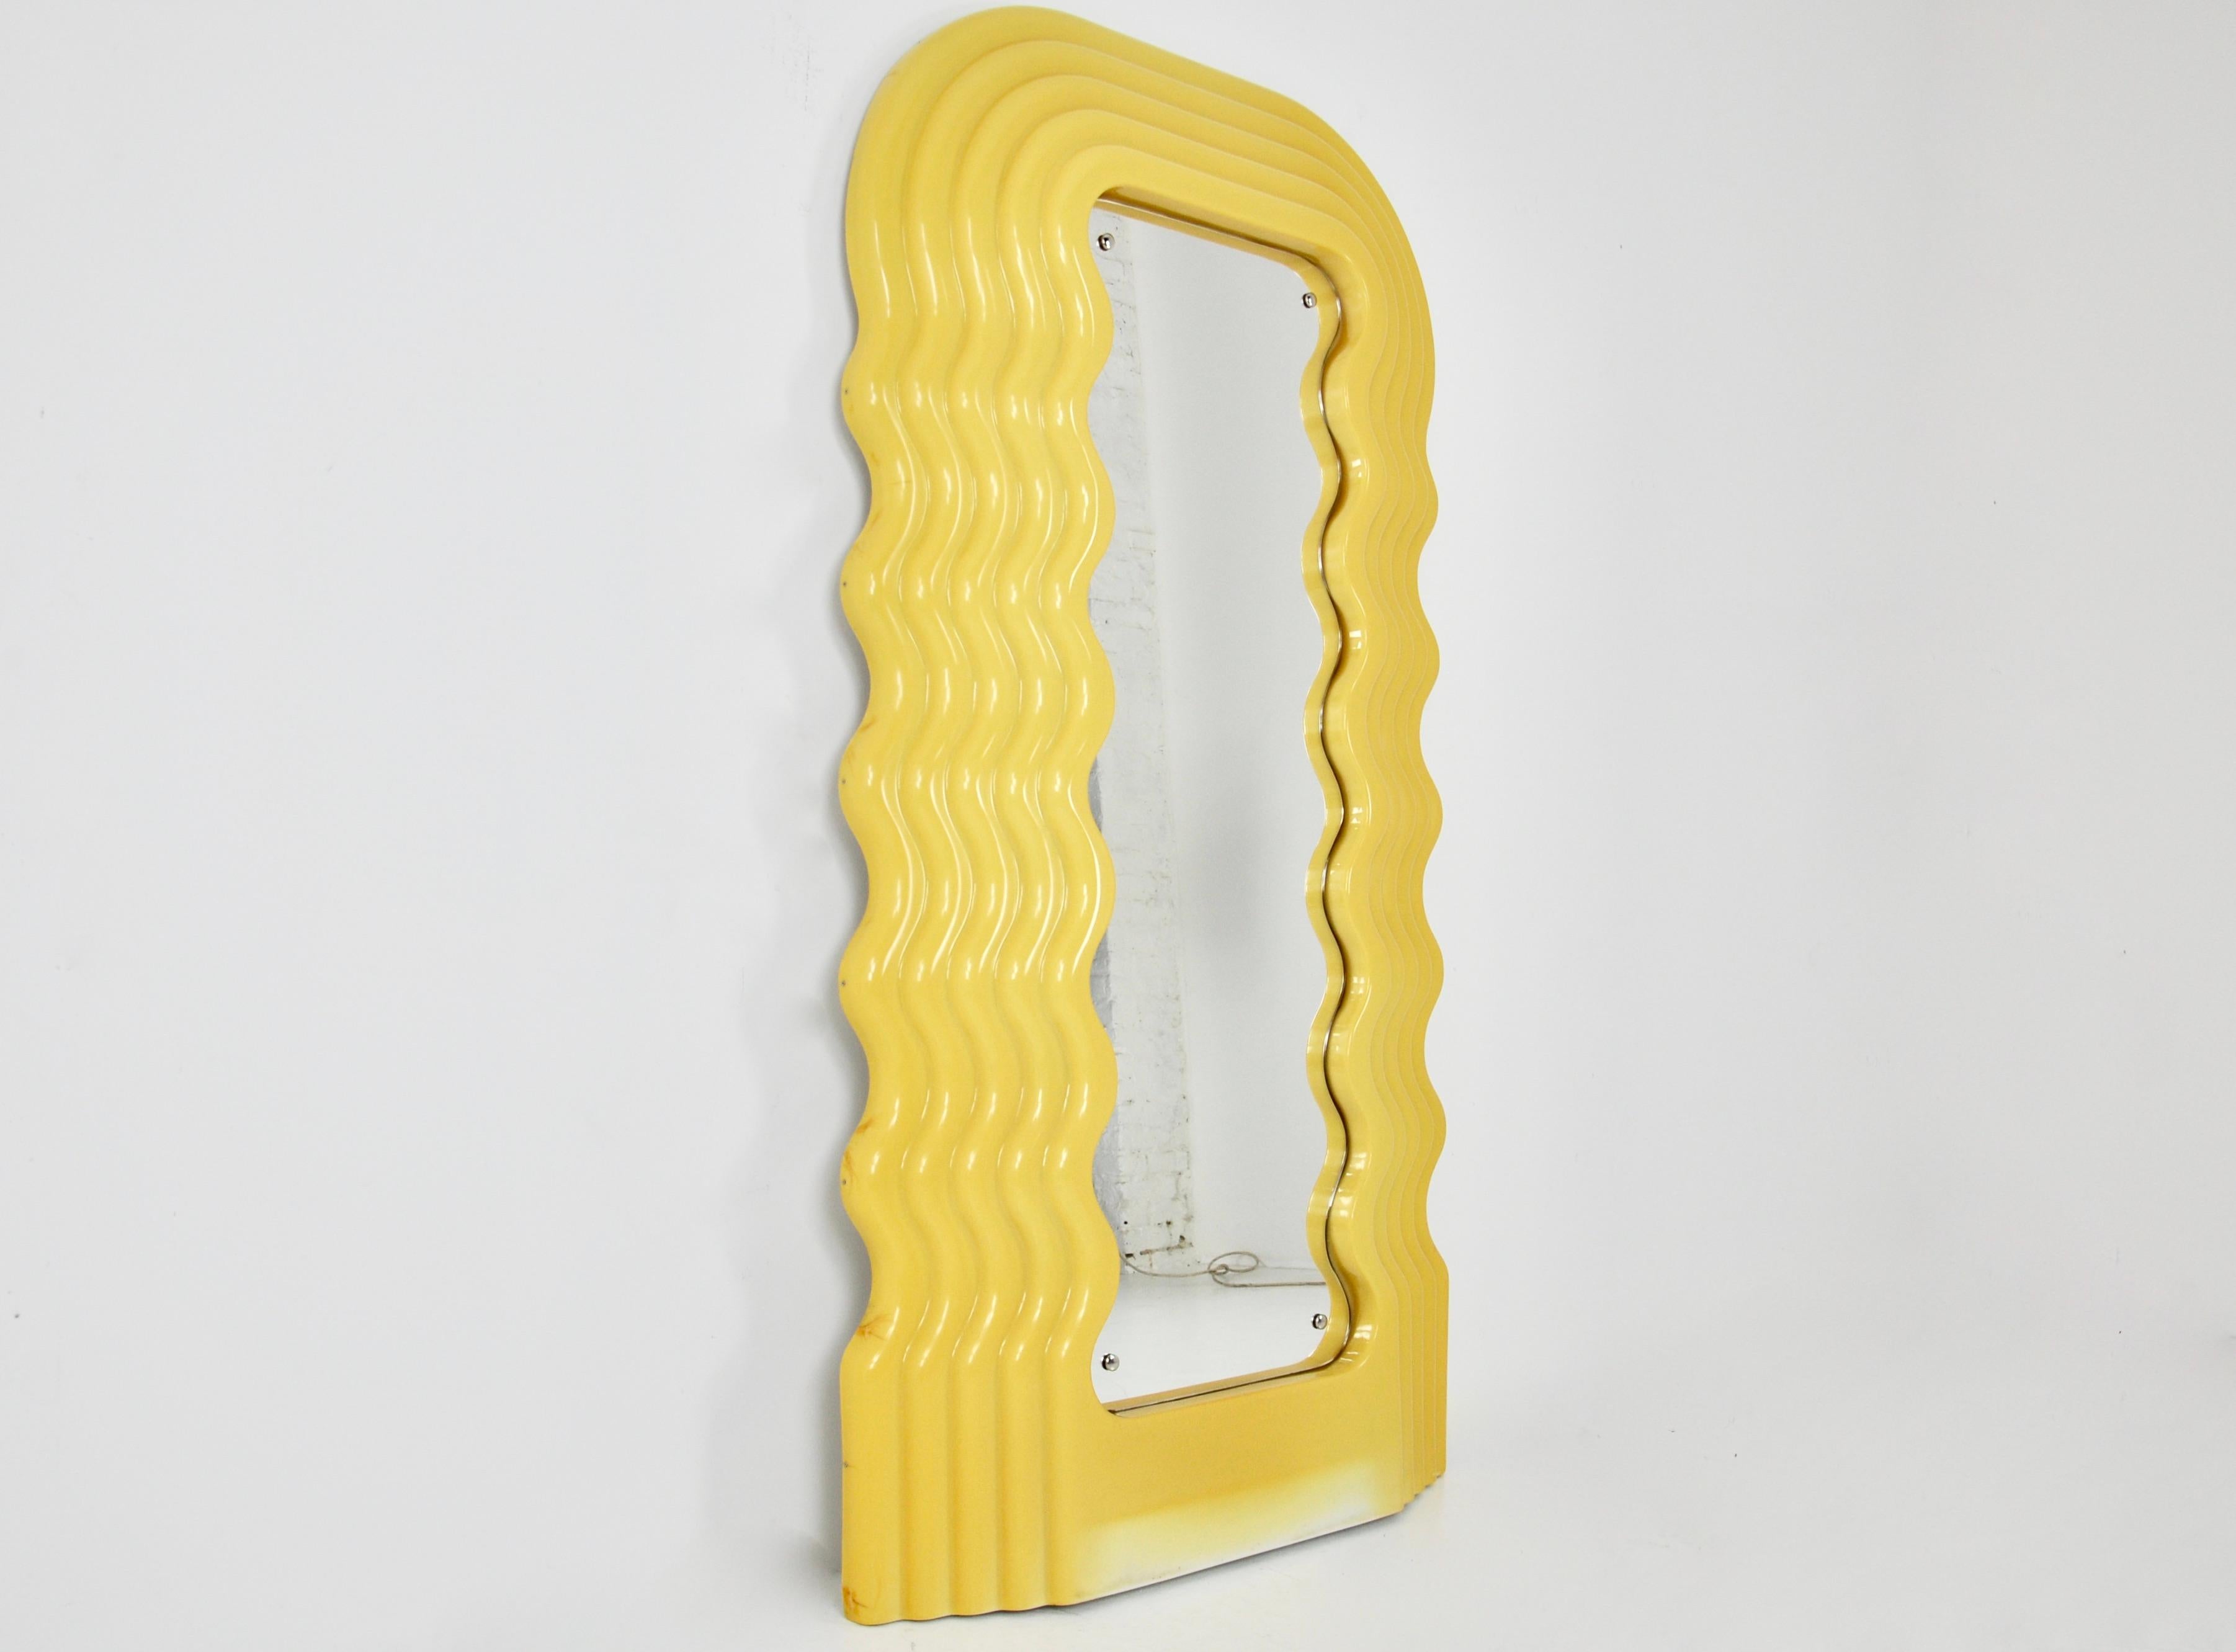 Première édition du miroir lumineux jaune d'Ettore Sottsass. L'âge et l'usure du temps du miroir.